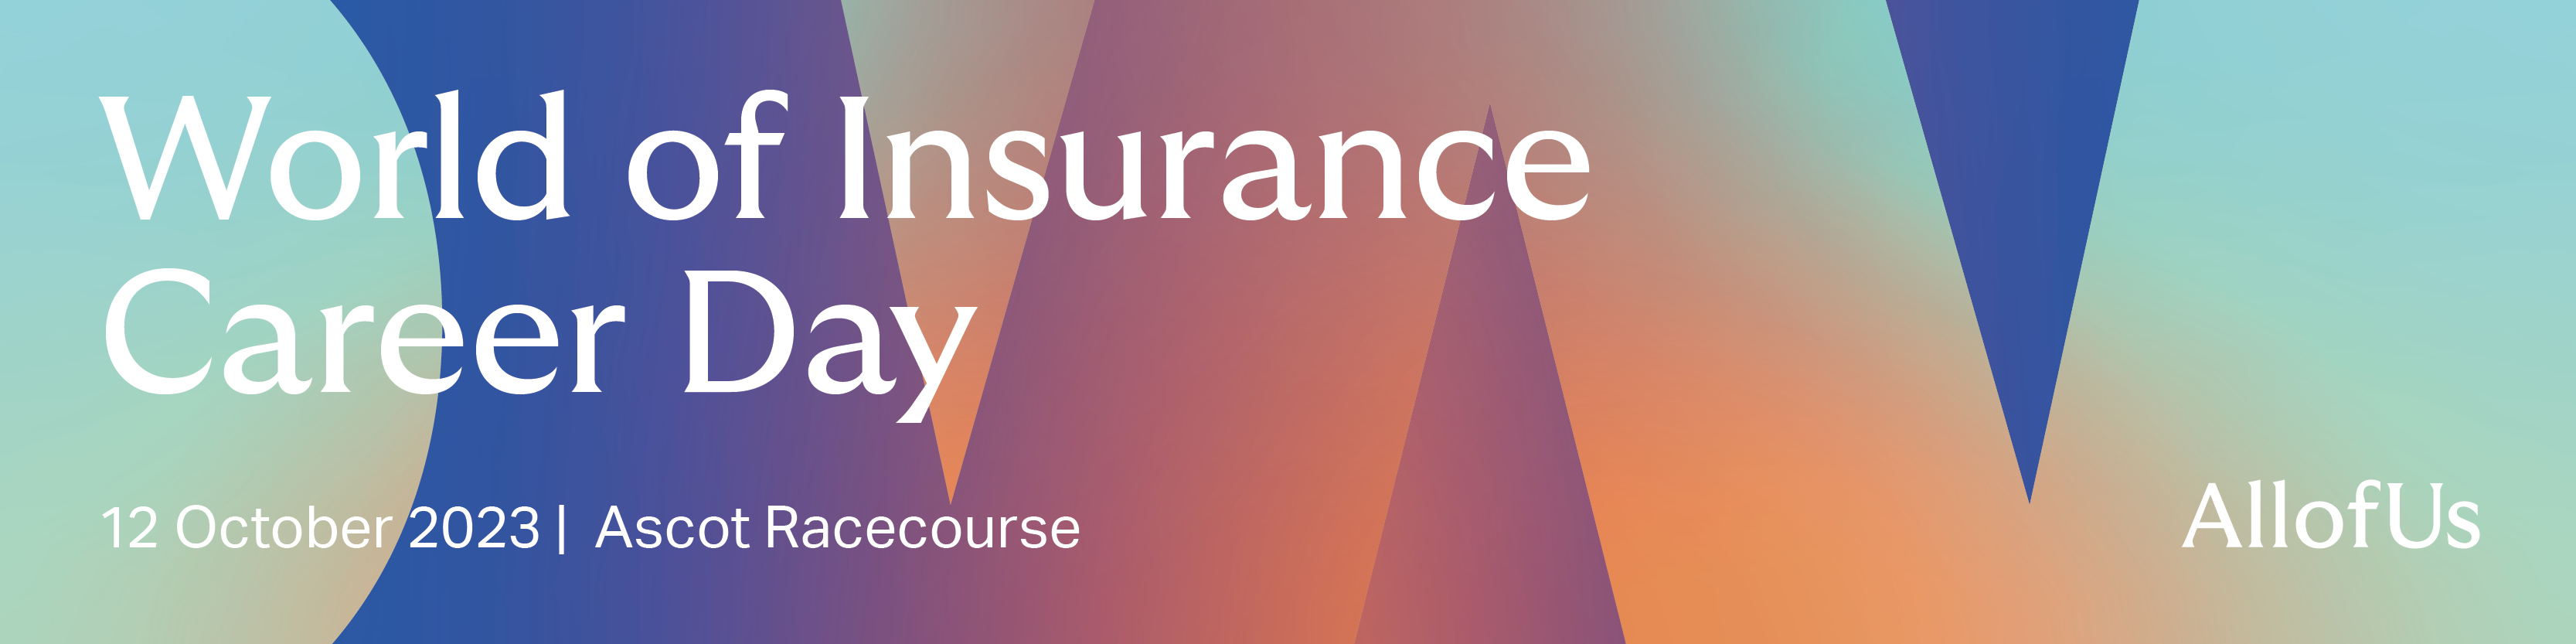 Banner for World of Insurance Career Day 2023